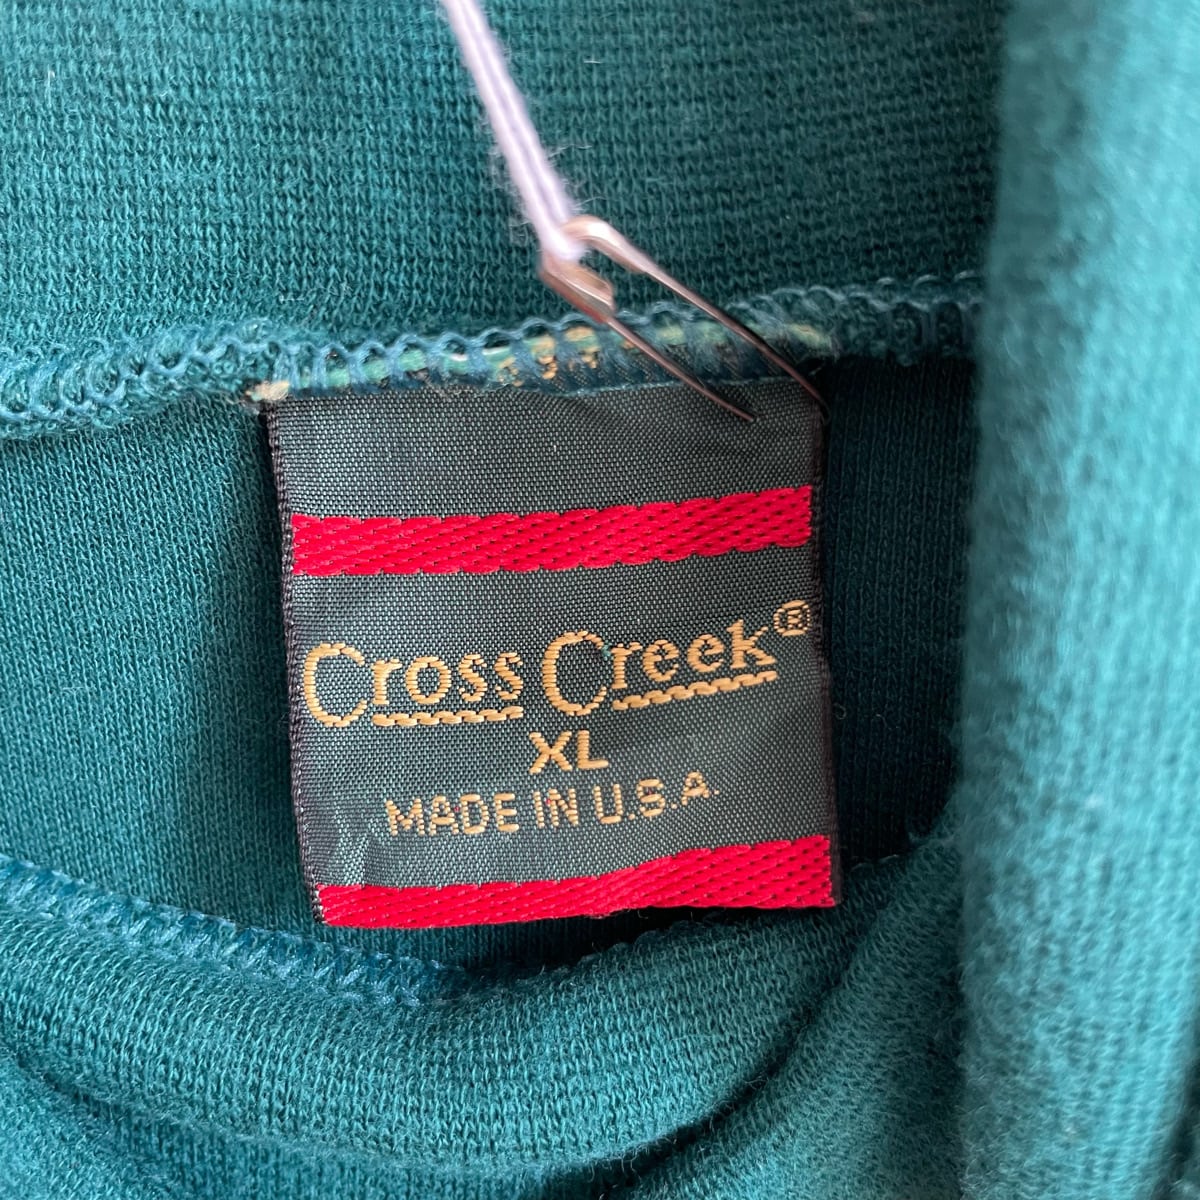 90s Cross Creek タートルネック 長袖Tシャツ カットソー ロンT ...